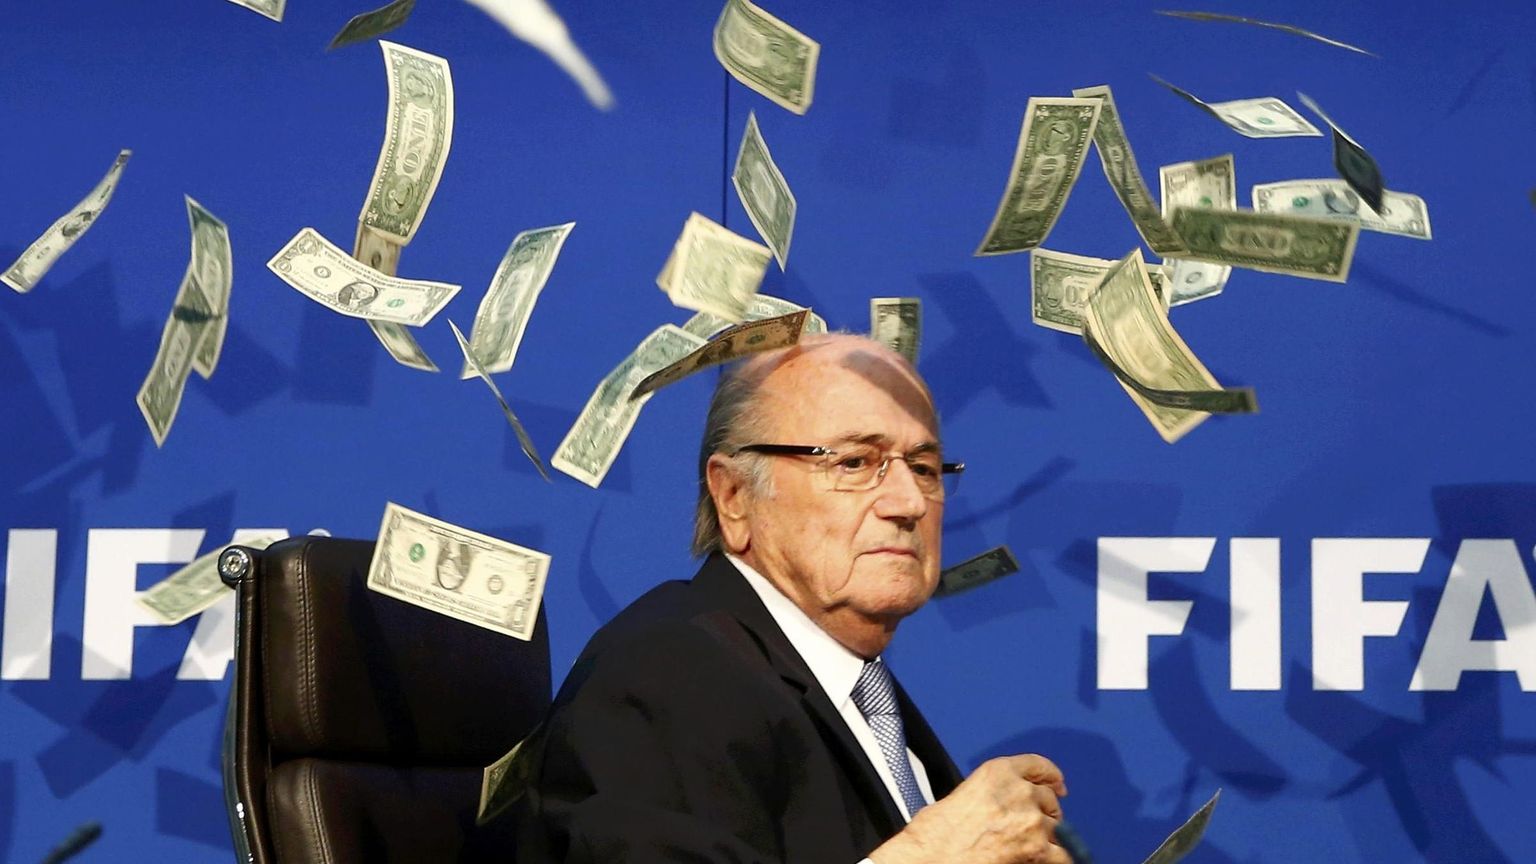 POLE LUBATUD: Ülehomme Kataris algav vuti MM-i finaalturniir on esimene, kus FIFA kauaaegne president Sepp Blatter isegi pealtvaatajana osaleda ei tohi.